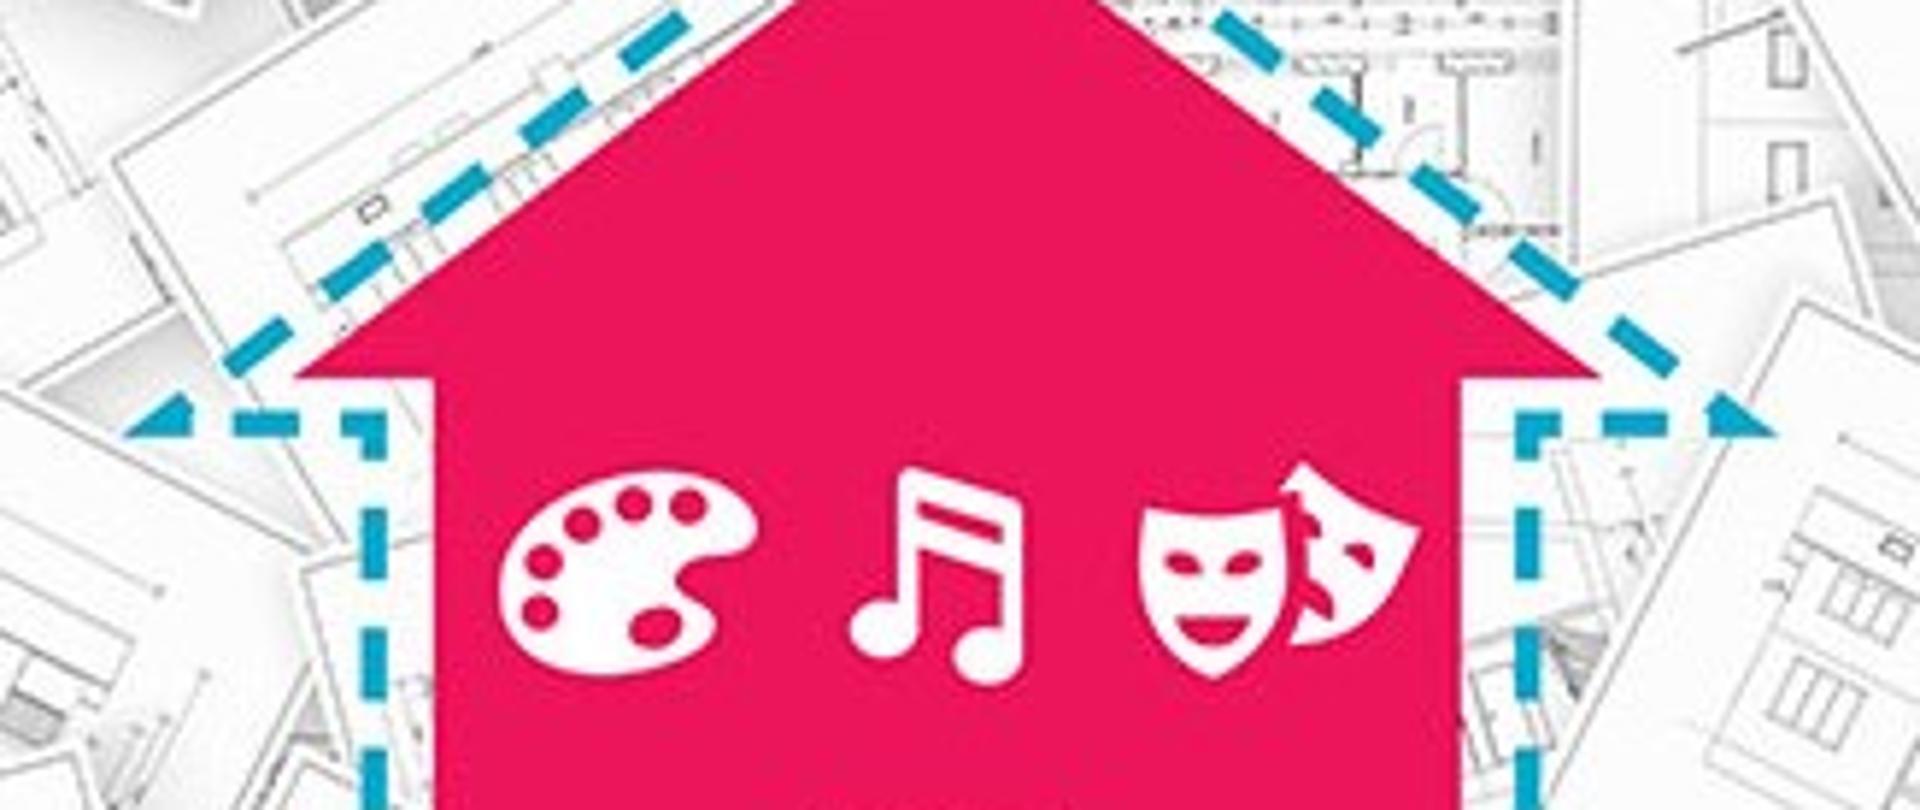 Plakat - termomodernizacja na którym znajduje się różowy domek otoczony niebieską przerywaną linią, w środku domku znajdują się symbole kultury tj. malarstwo - paleta farb, muzyka - nuta oraz teatr - maski. Całość jest na szarym tle projektów budynków.